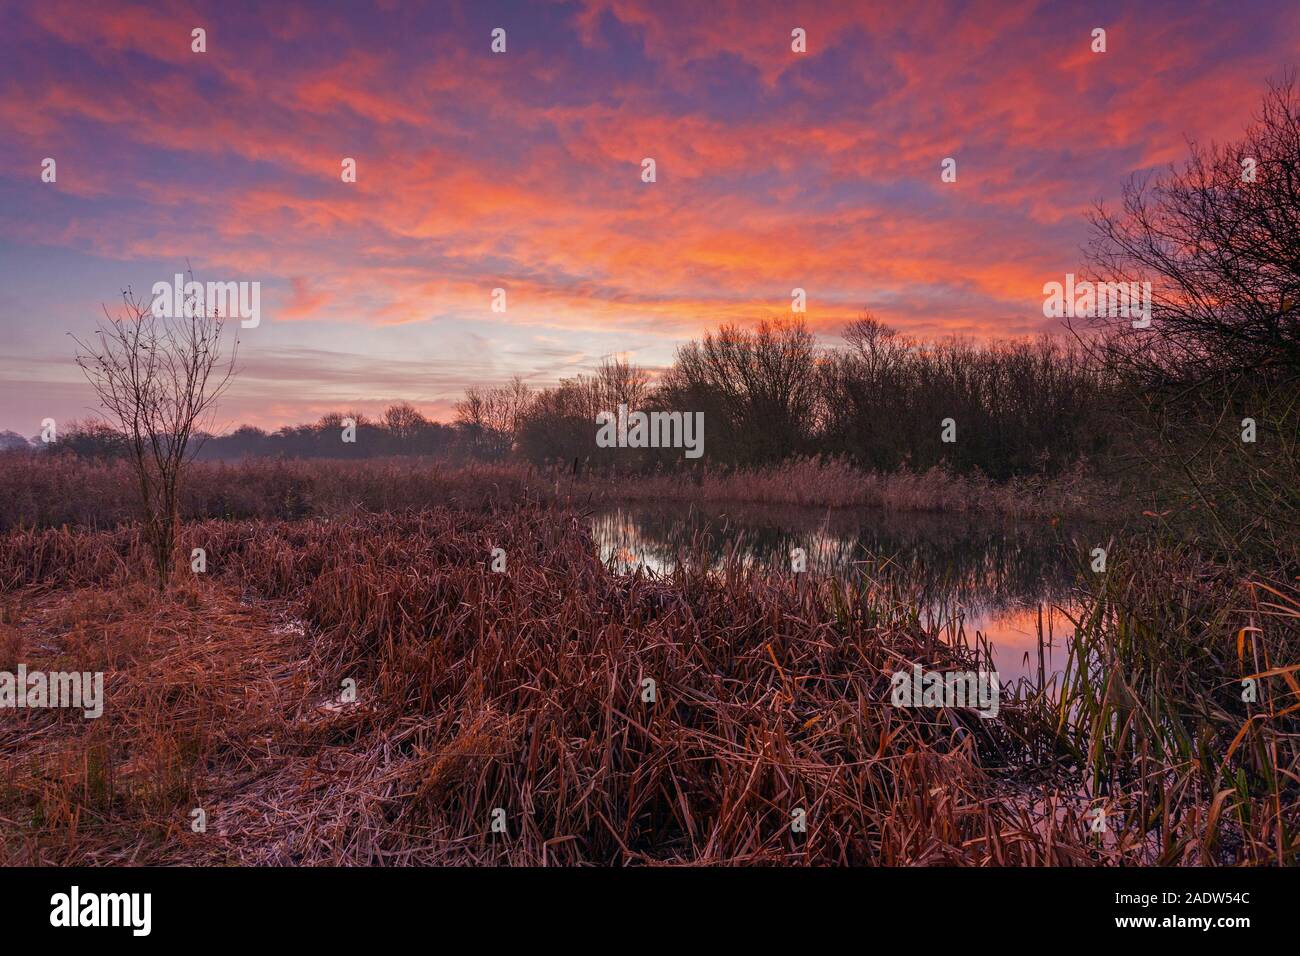 Barton-upon-Humber, Norte de Lincolnshire, Reino Unido. 5 de diciembre de 2019. El clima del REINO UNIDO: Amanecer sobre una reserva natural, en una mañana de invierno en diciembre. Crédito: LEE BEEL/Alamy Live News. Foto de stock